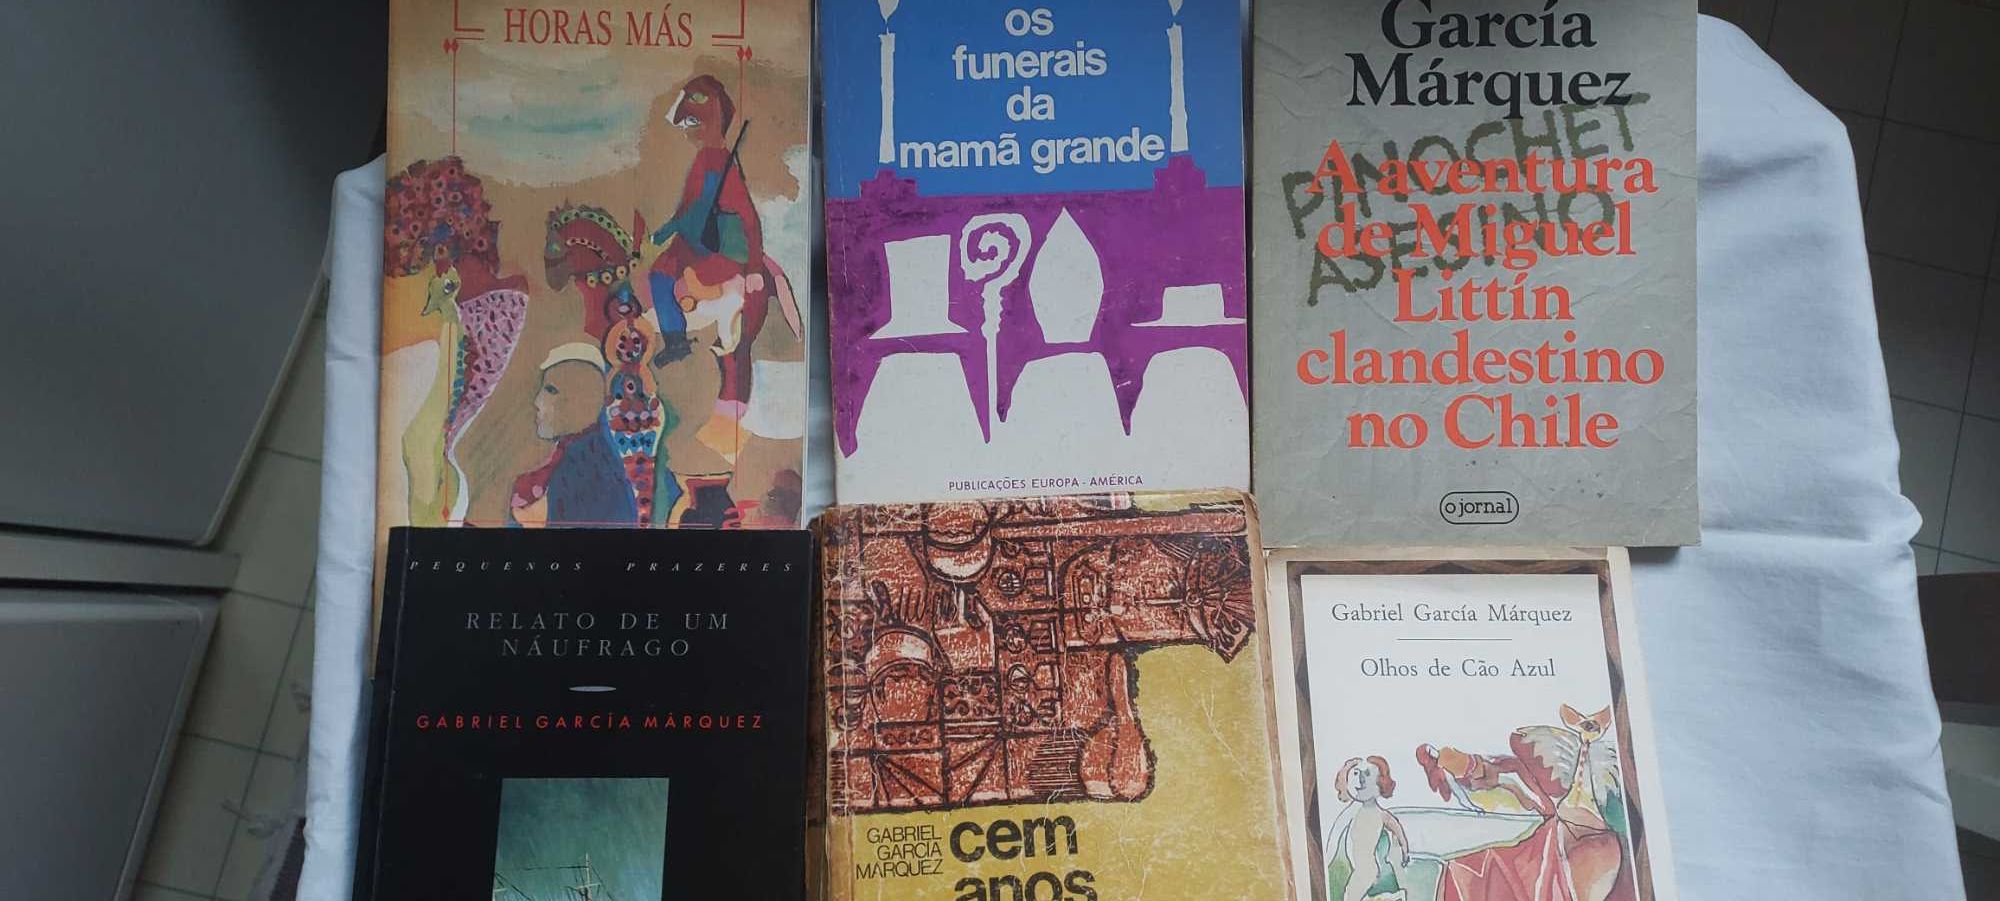 Gabriel Garcia Marquez 6 excelentes livros